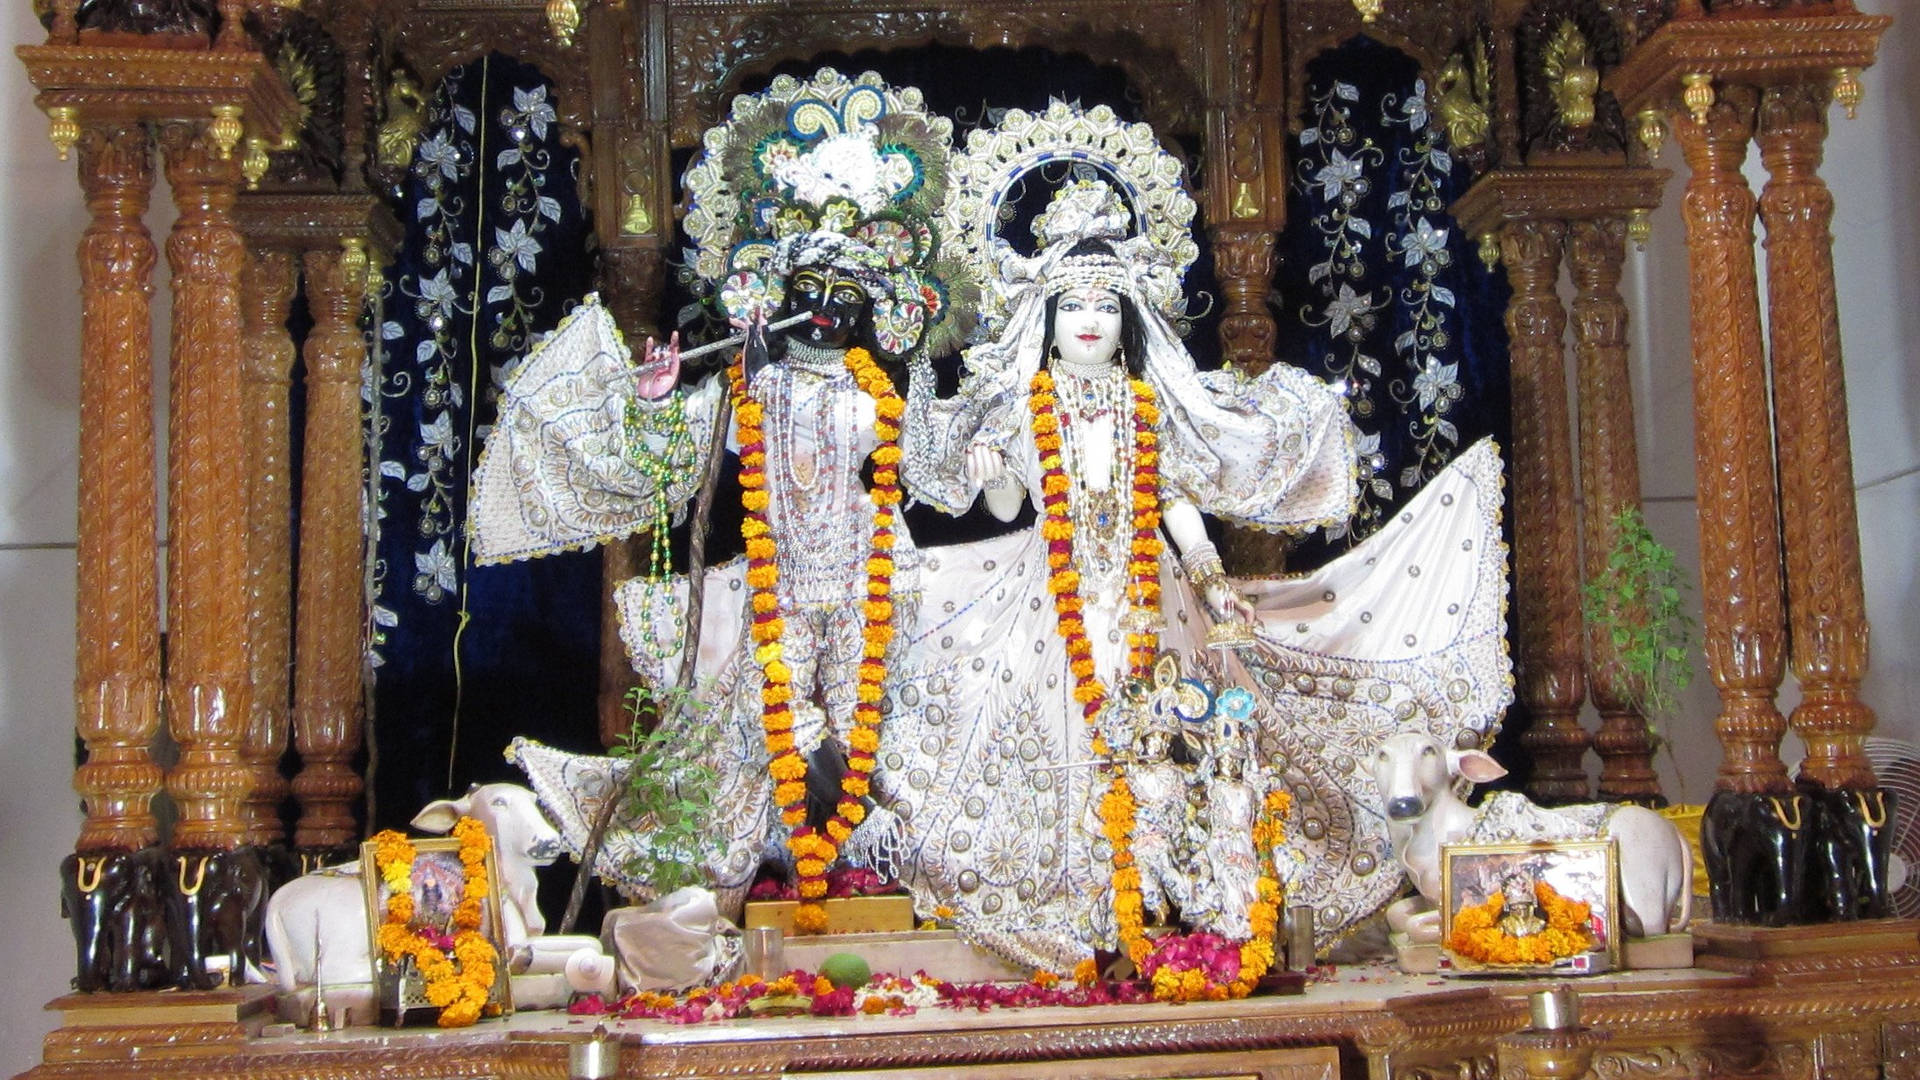 Two Deities In Banke Bihari Altar